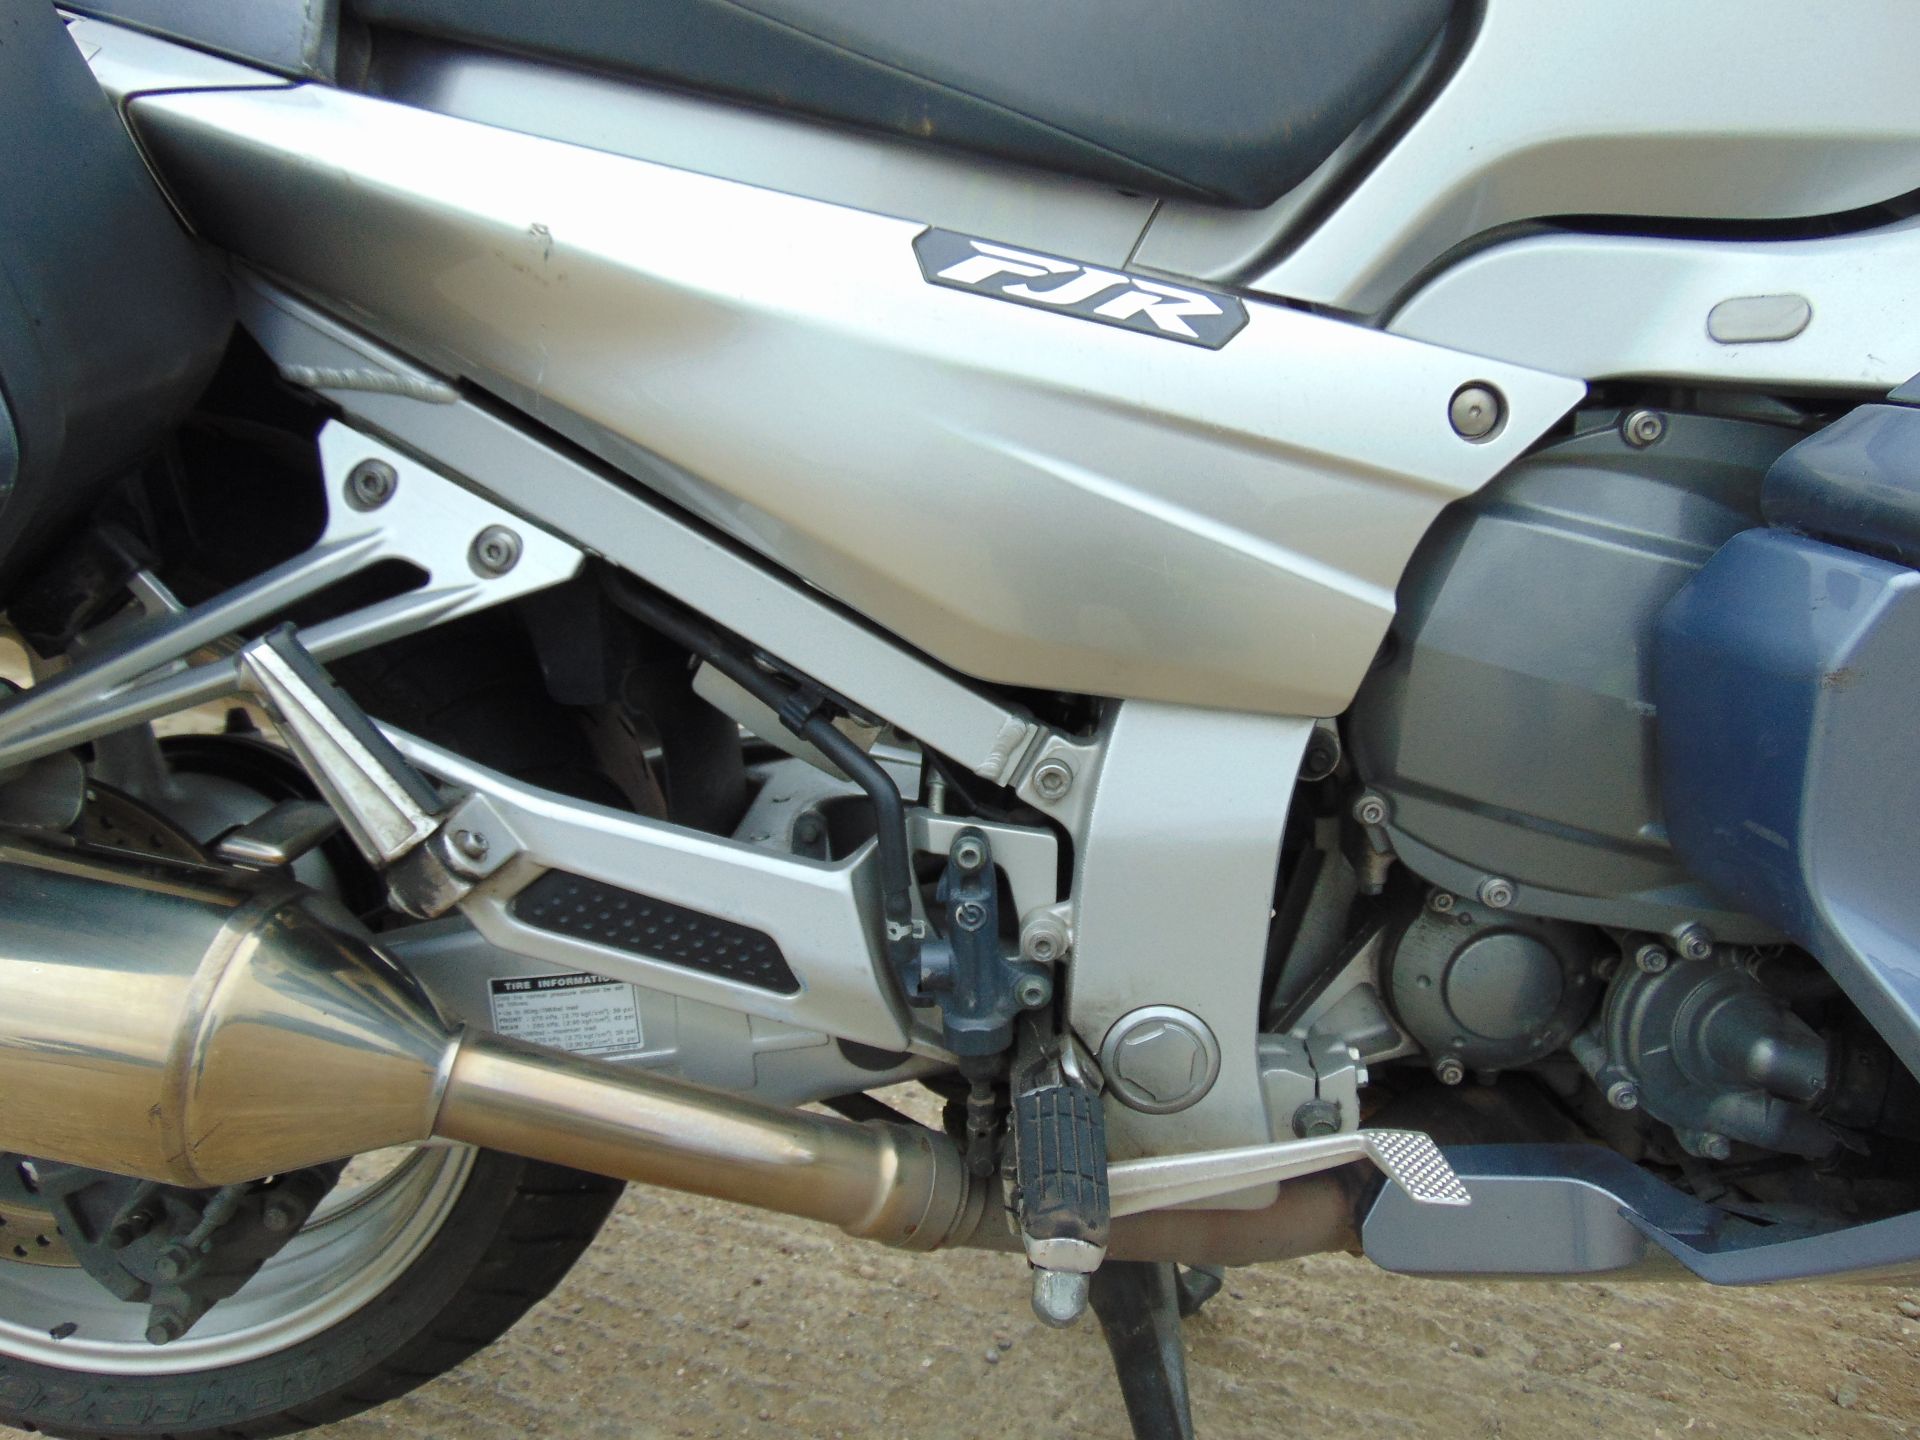 2008 Yamaha FJR1300 Motorbike - Image 13 of 15